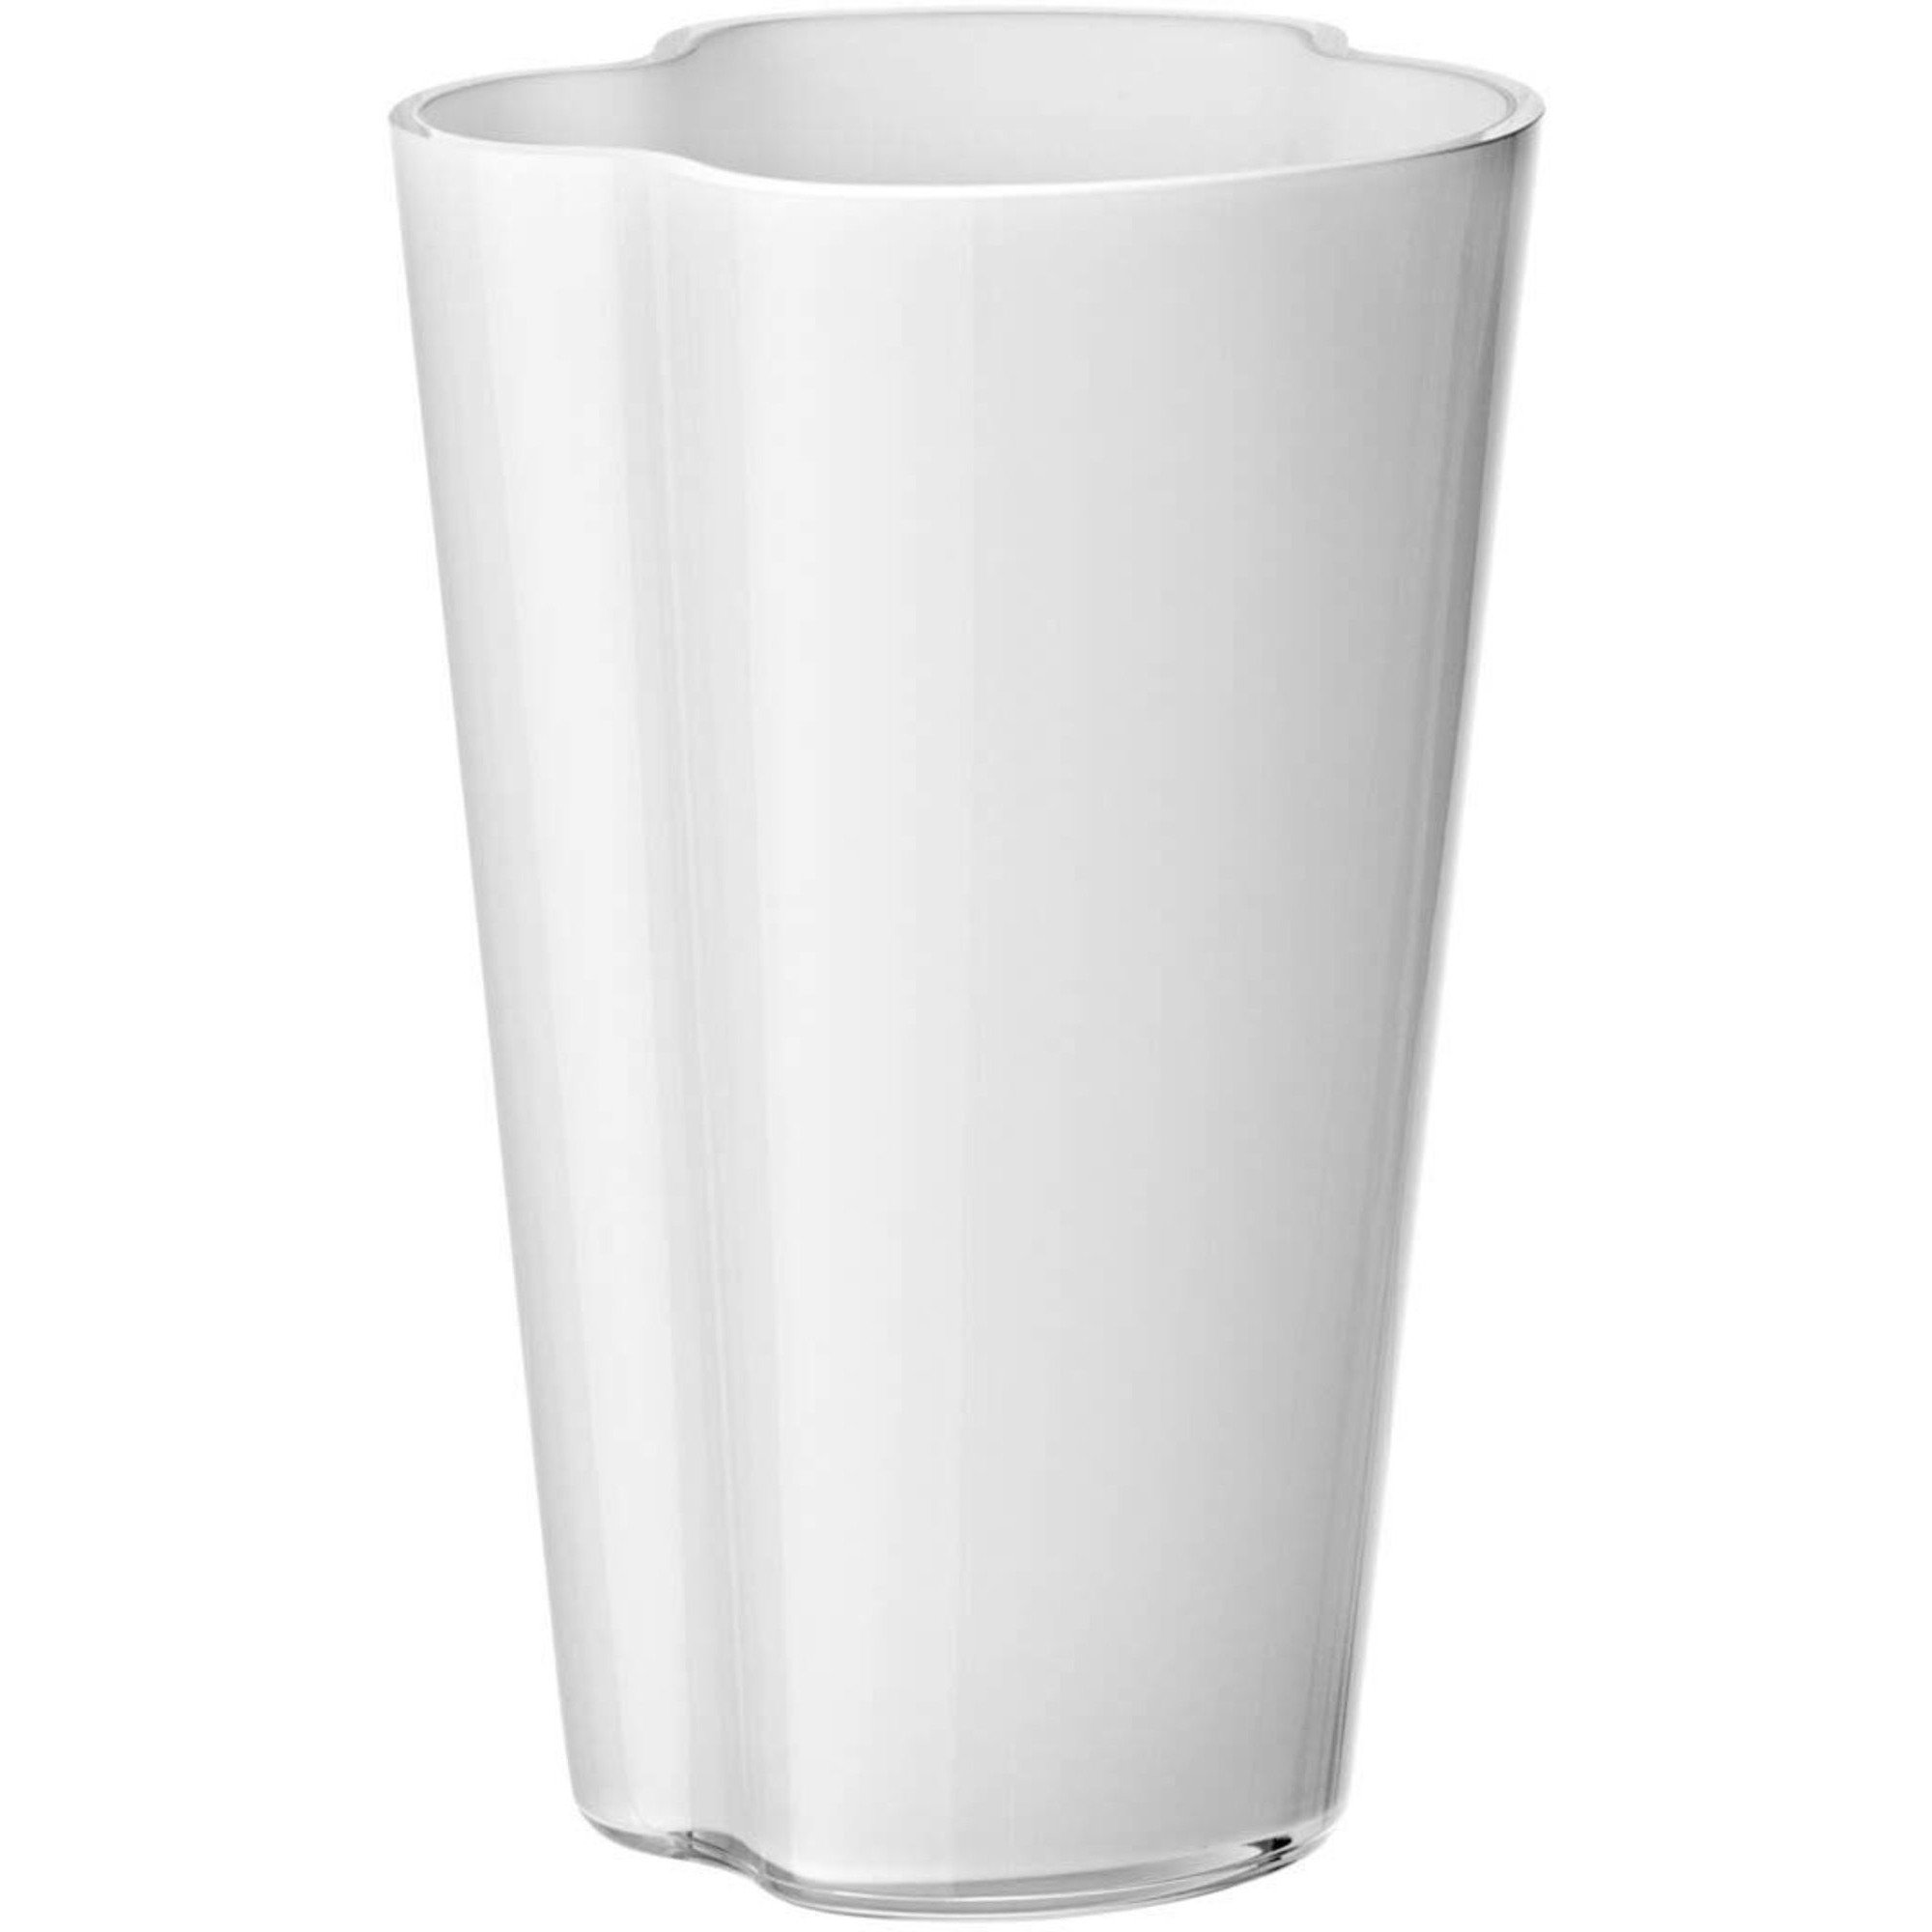 #1 på vores liste over vaser er Vase